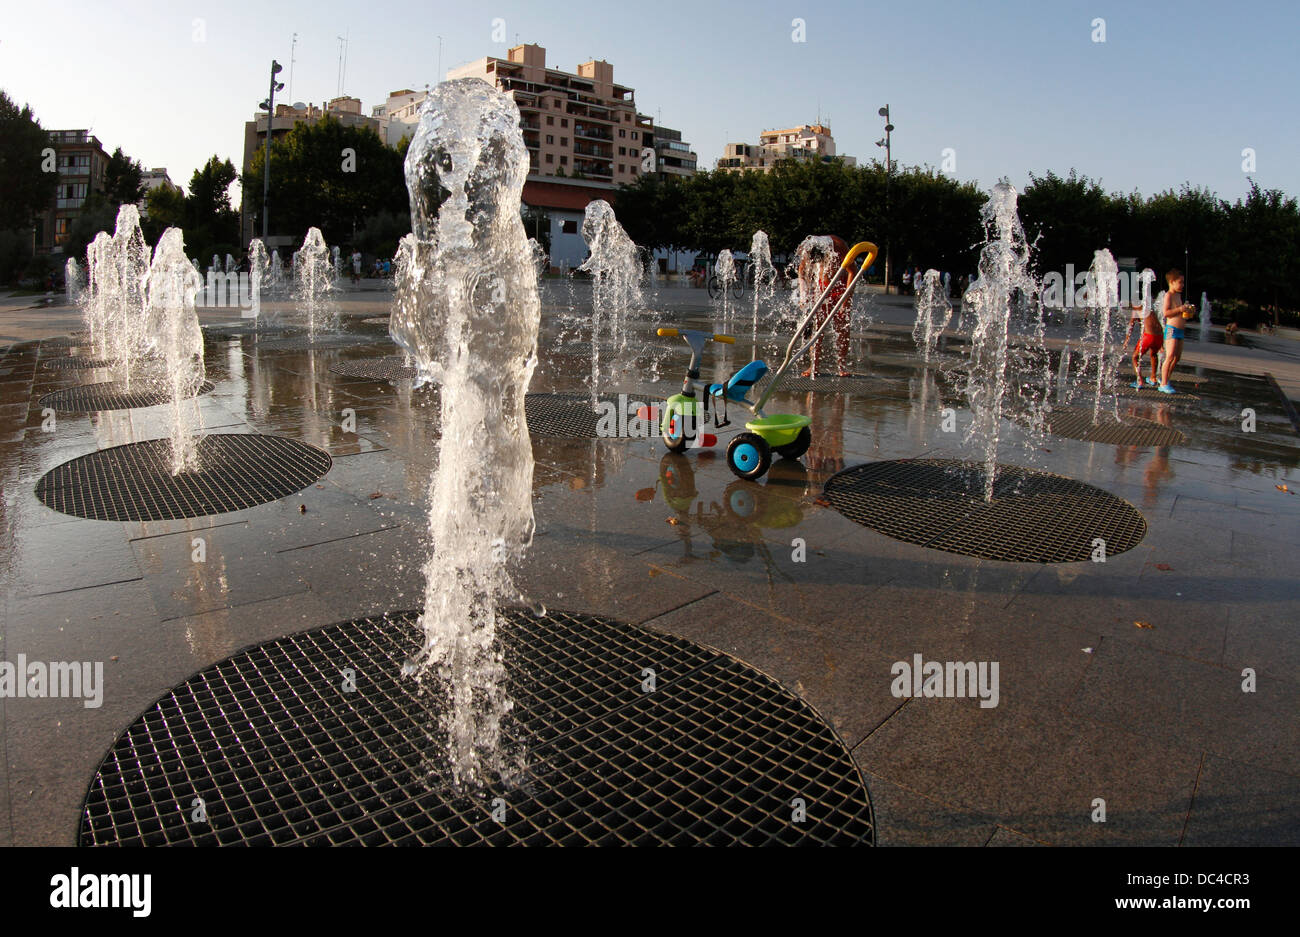 Aggiorna i bambini a giocare sul pavimento fontane durante una ondata di caldo con temperature intorno ai 40 gradi a Maiorca, l'isola spagnola Foto Stock